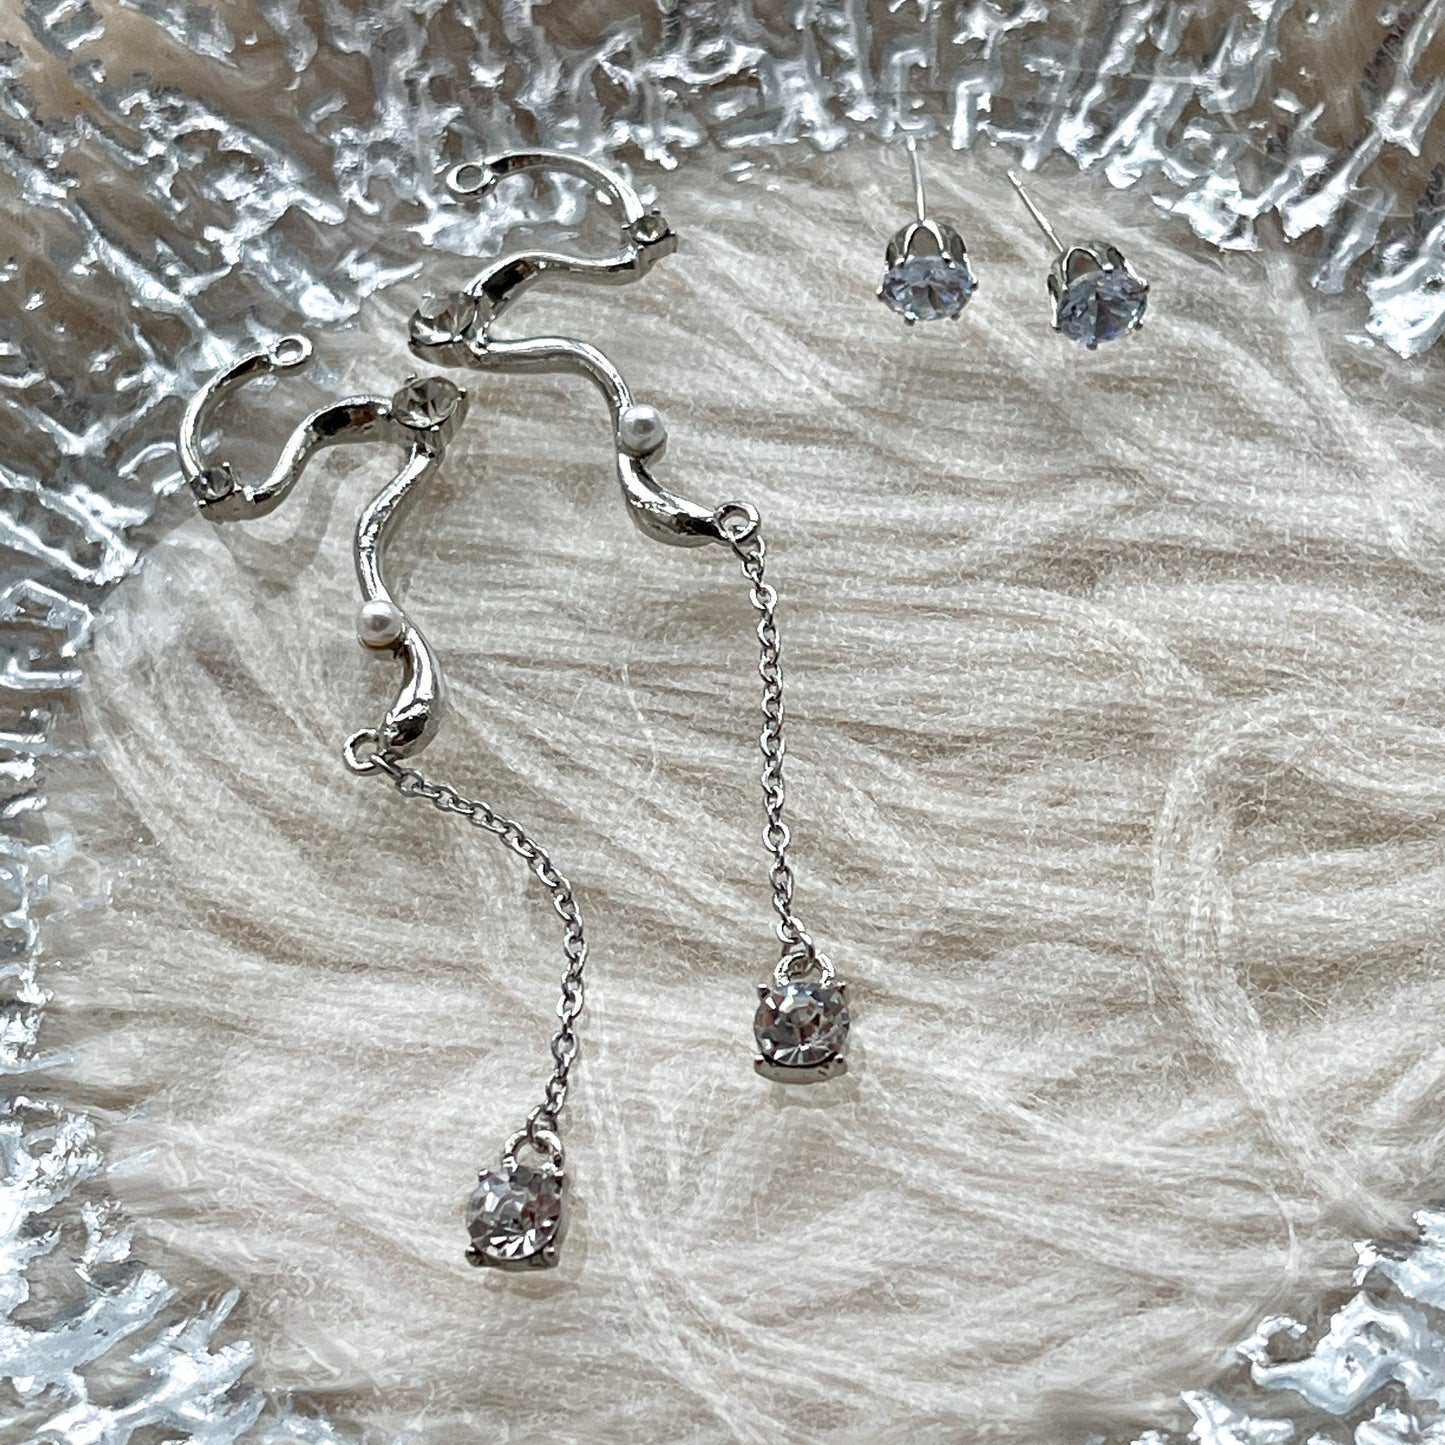 Snake shaped earrings, 2 Way earrings, S shaped wandering earrings, Long dangle earrings, Gothic statement earrings, Unique DIY earrings